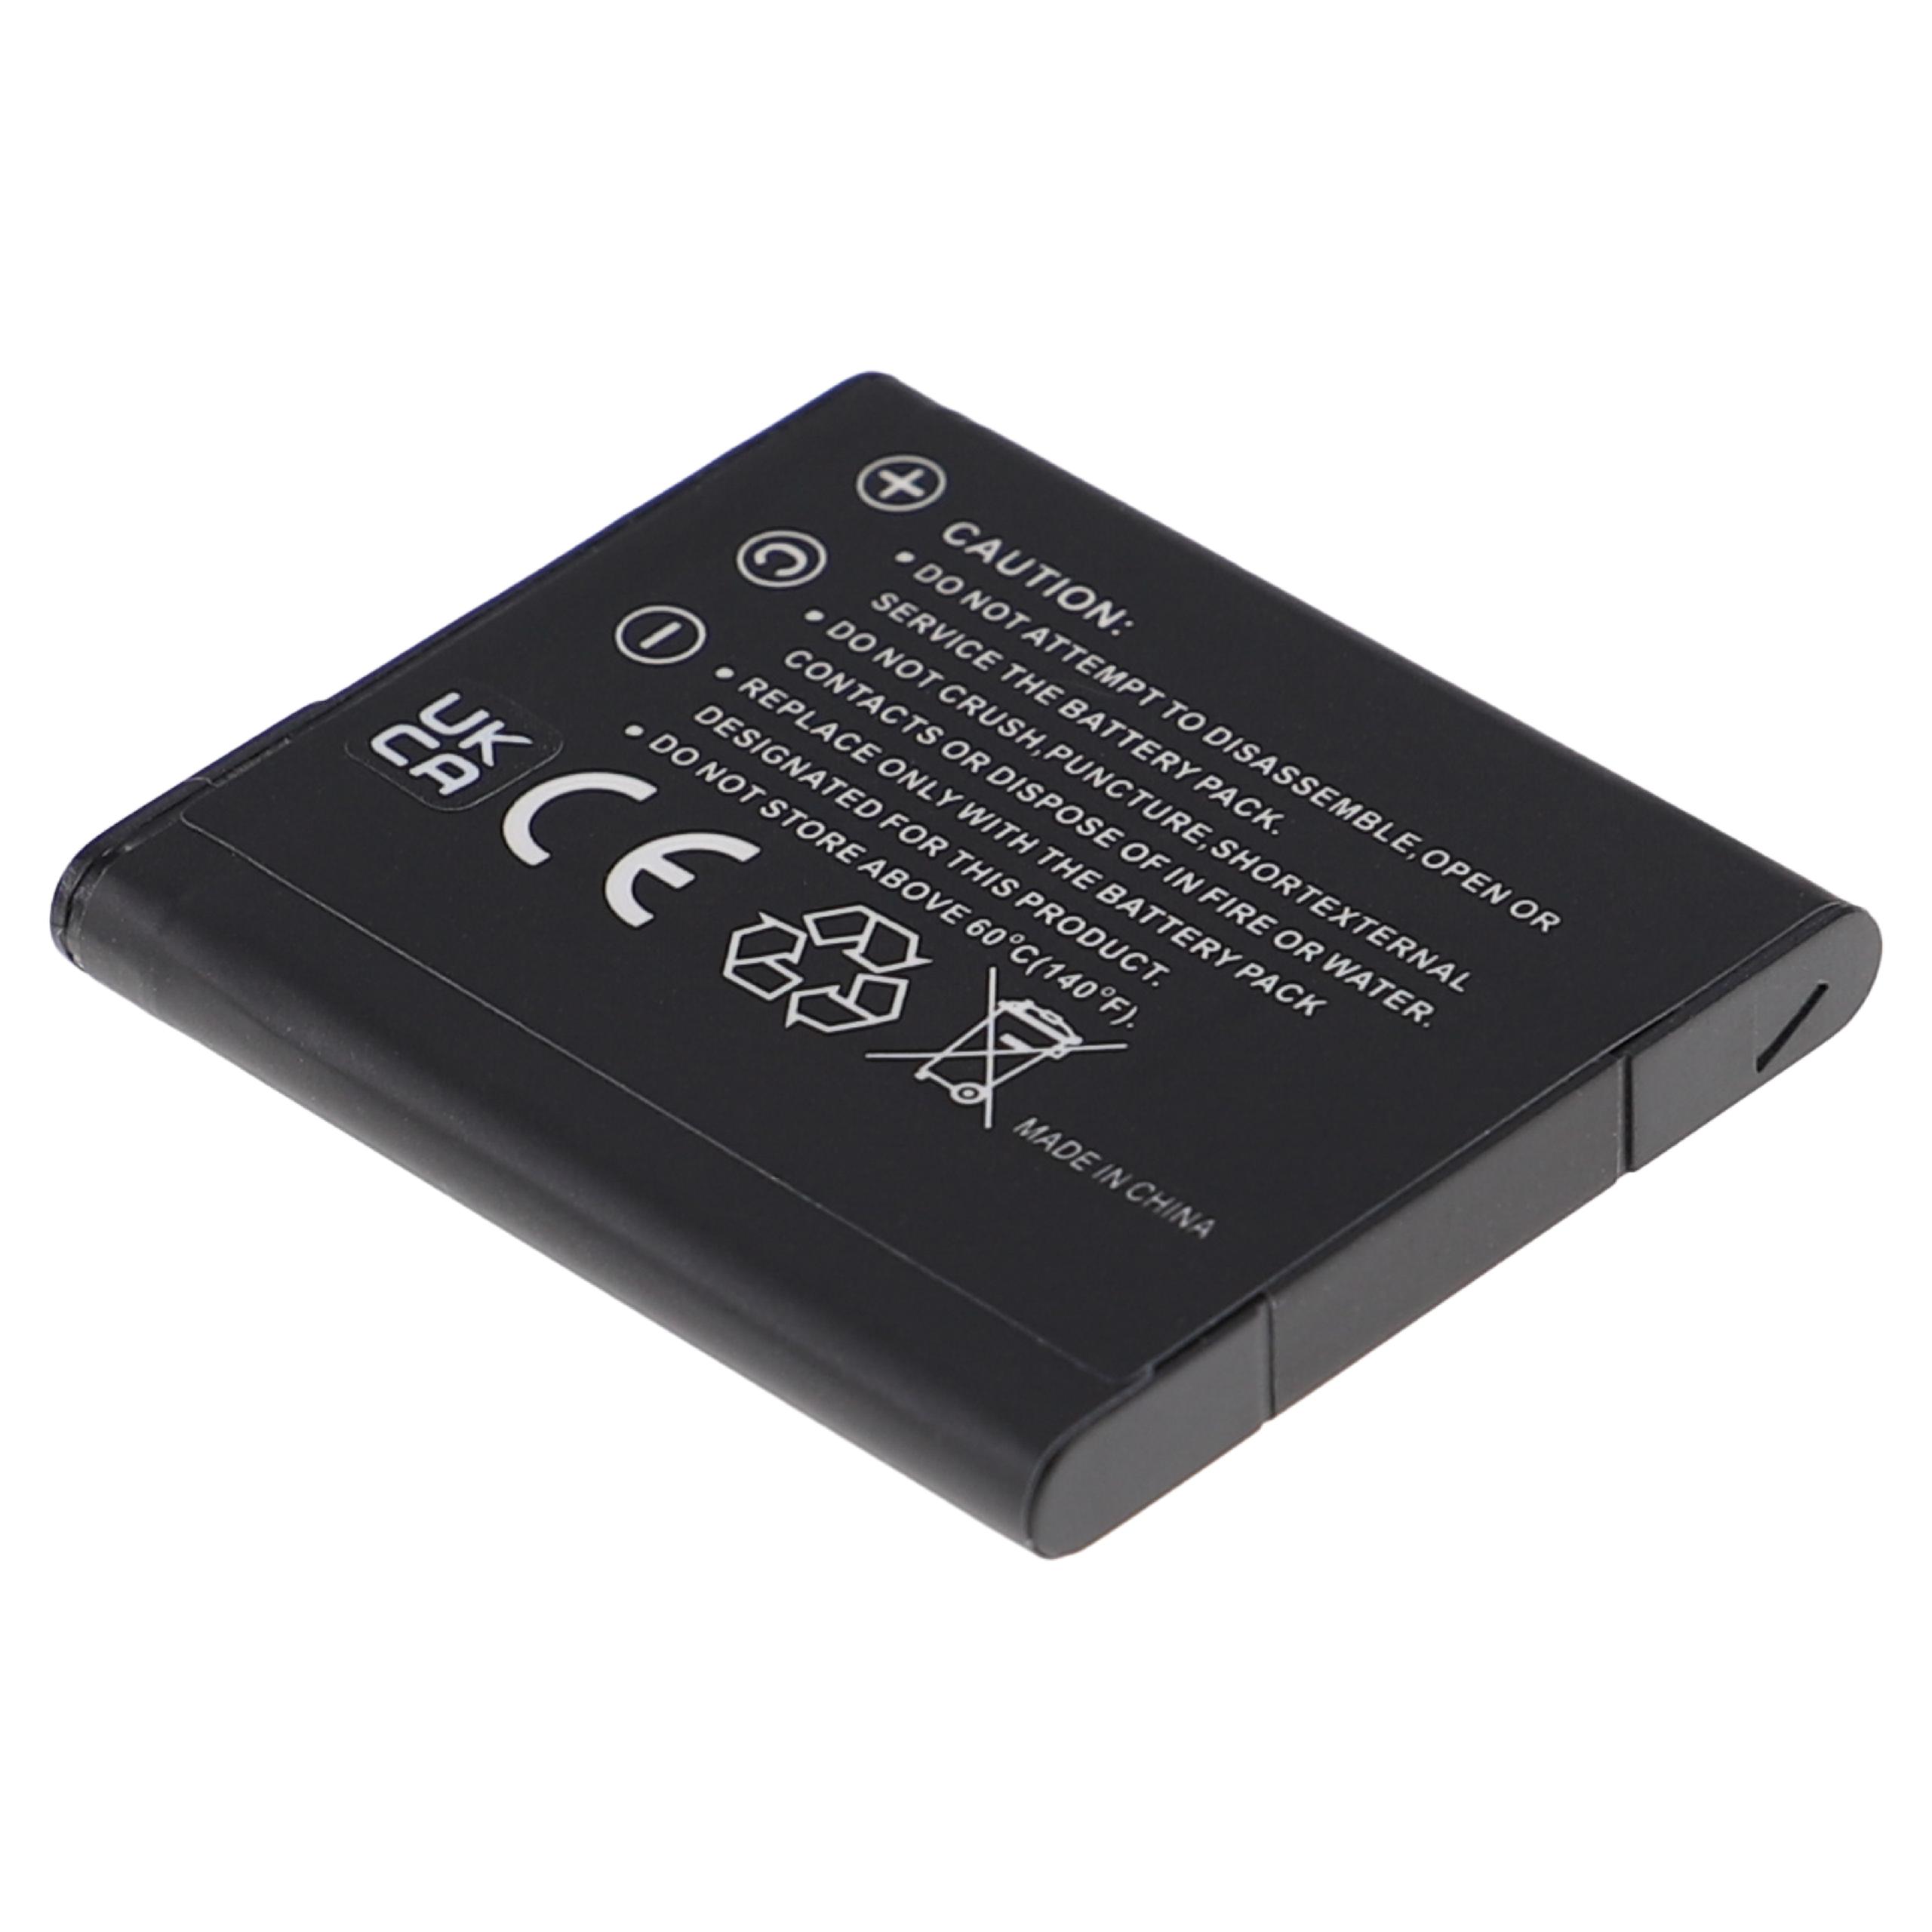 Batterie remplace Sony NP-BN1 pour appareil photo - 630mAh 3,7V Li-ion